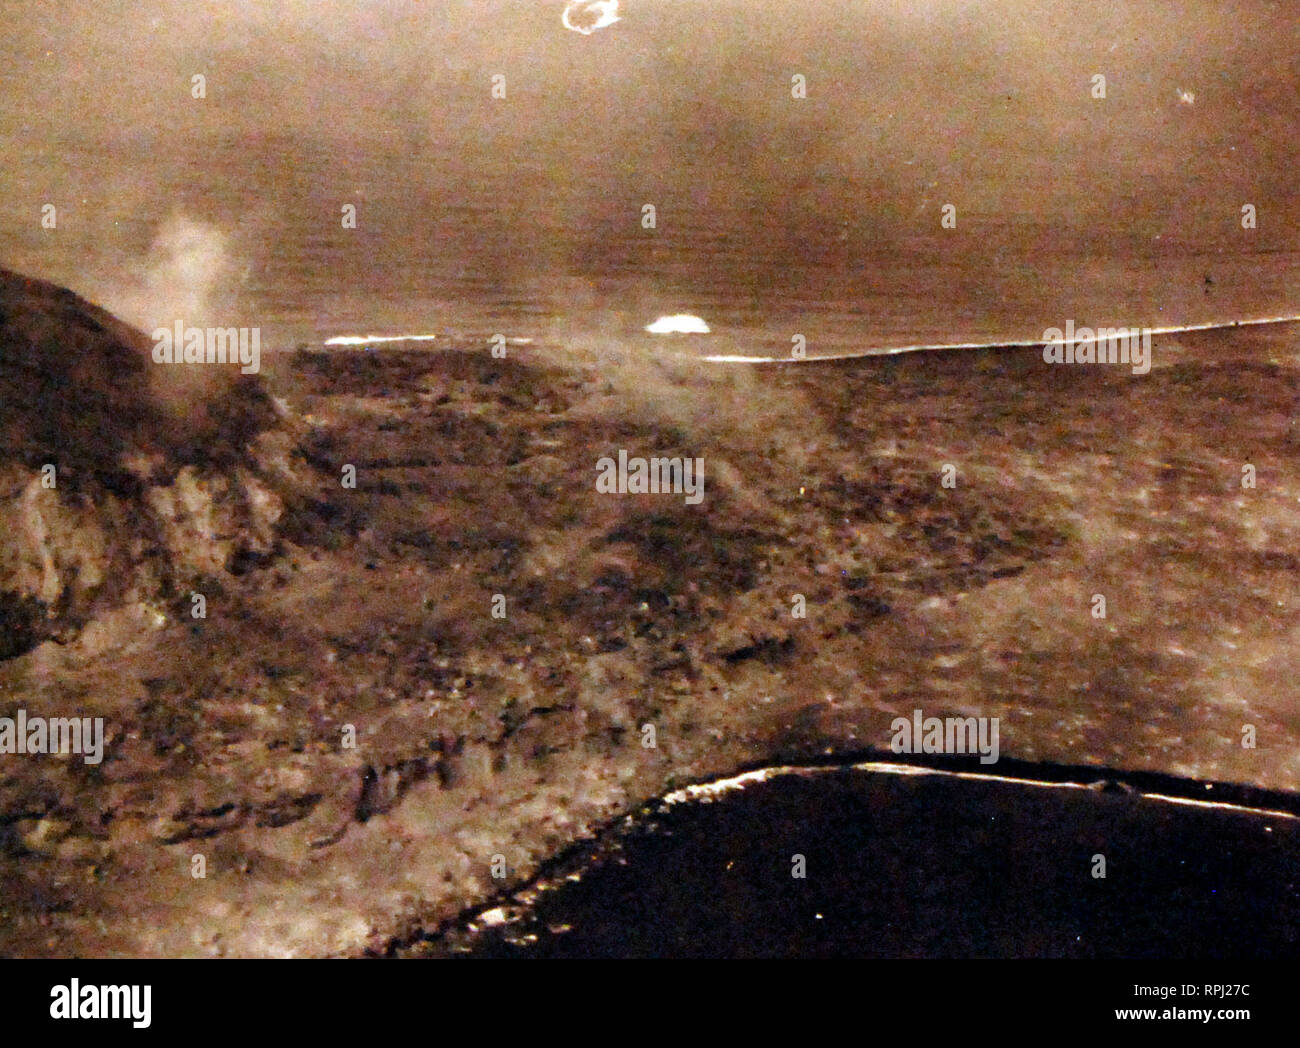 Schlacht um Iwo Jima, Februar-März 1945. Mt. Suribachi auf Iwo Jima. Schäden durch naval Geschützfeuer und Bombenangriffe zufügte, können entlang Bluff und am Strand gesehen werden. Mit dem Flugzeug von USS Makin Island (CVE 93) am D-Day, 19. Februar 1945 fotografiert. Stockfoto